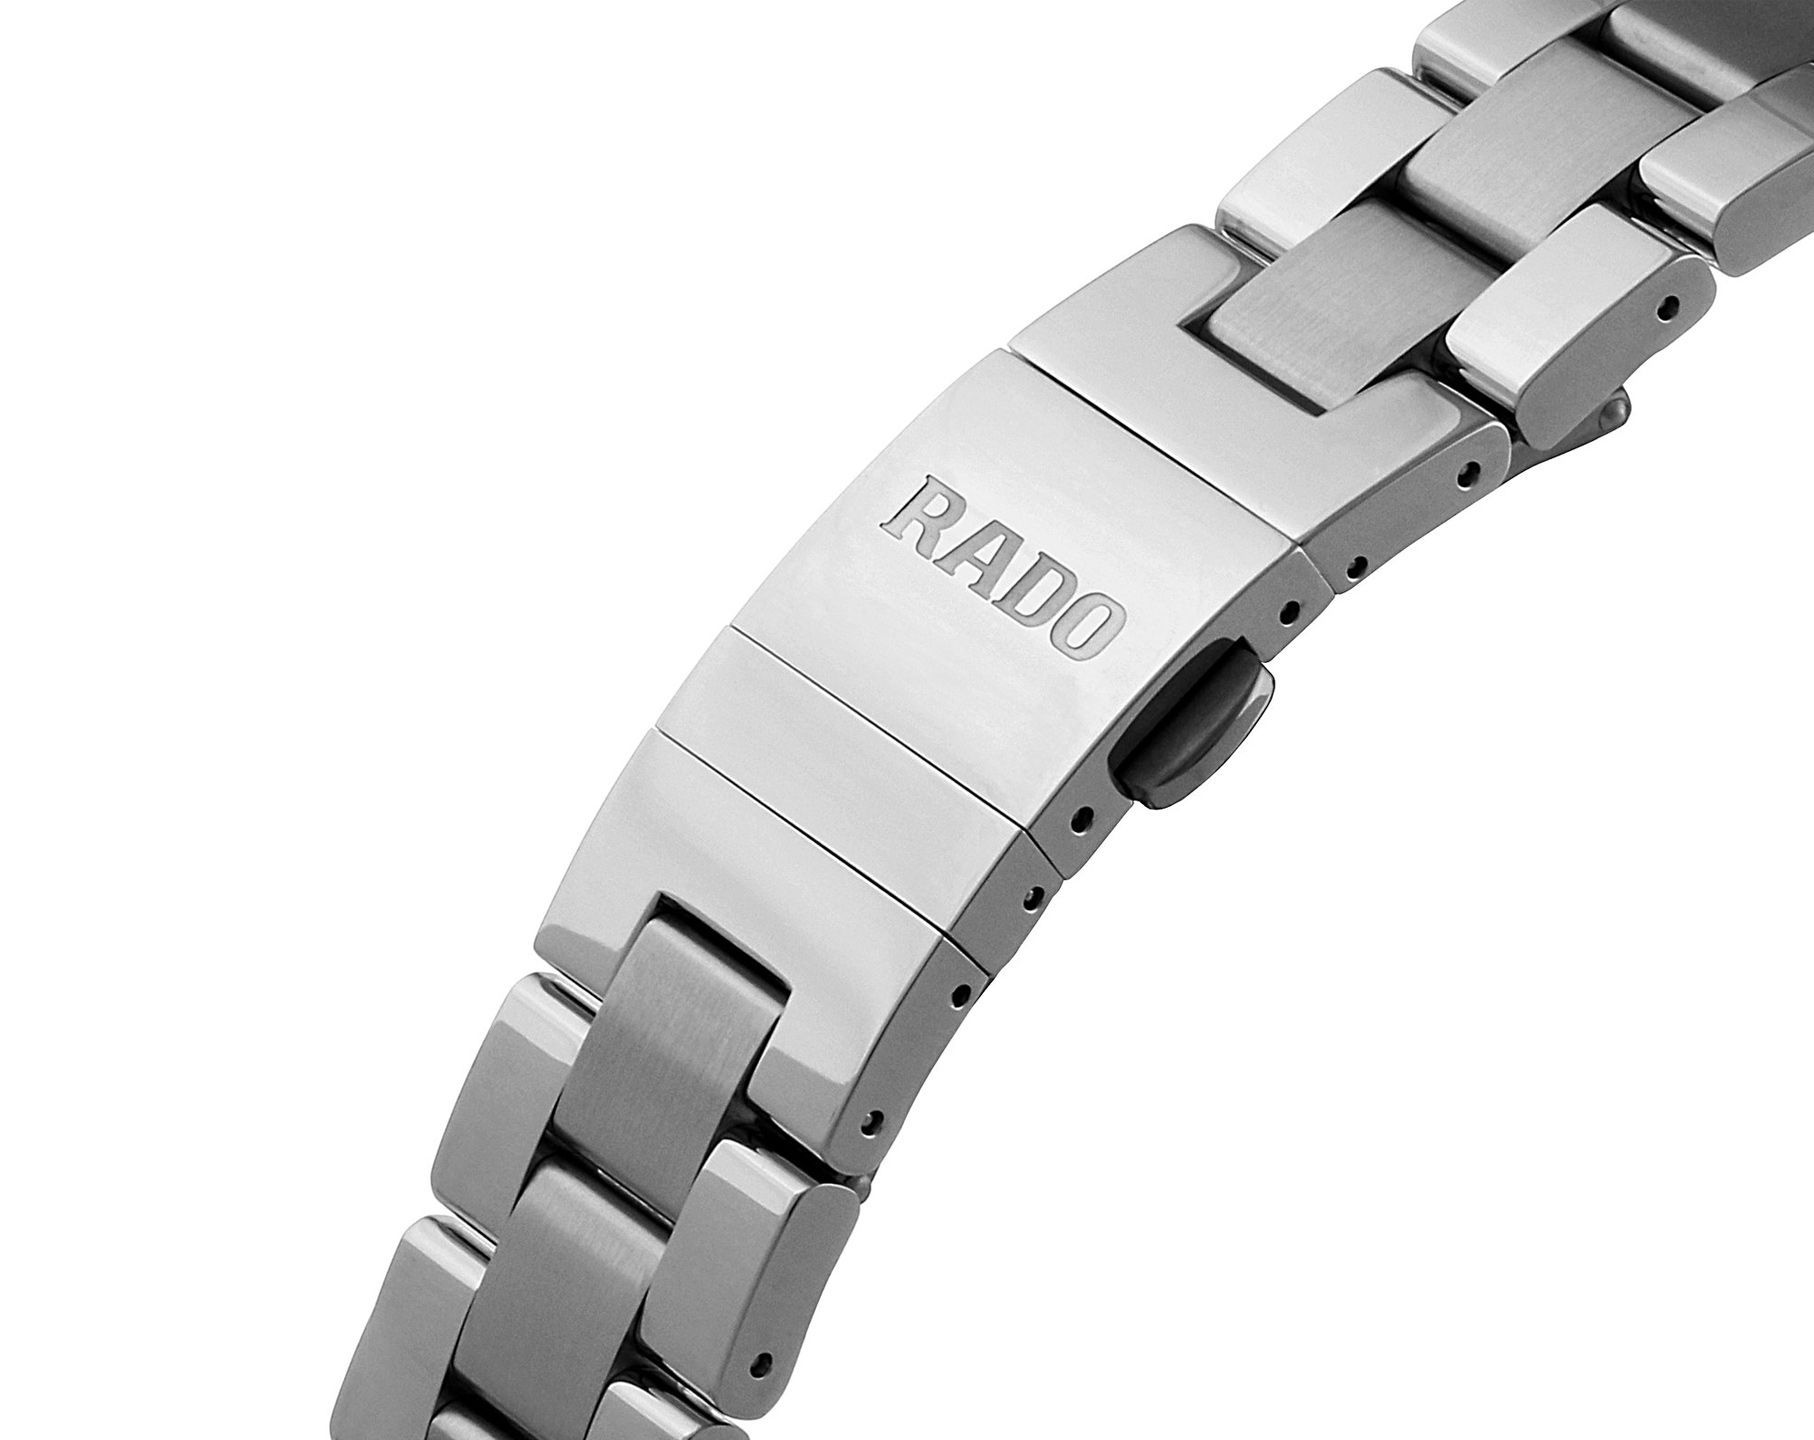 Rado HyperChrome  Grey Dial 44.9 mm Quartz Watch For Men - 3